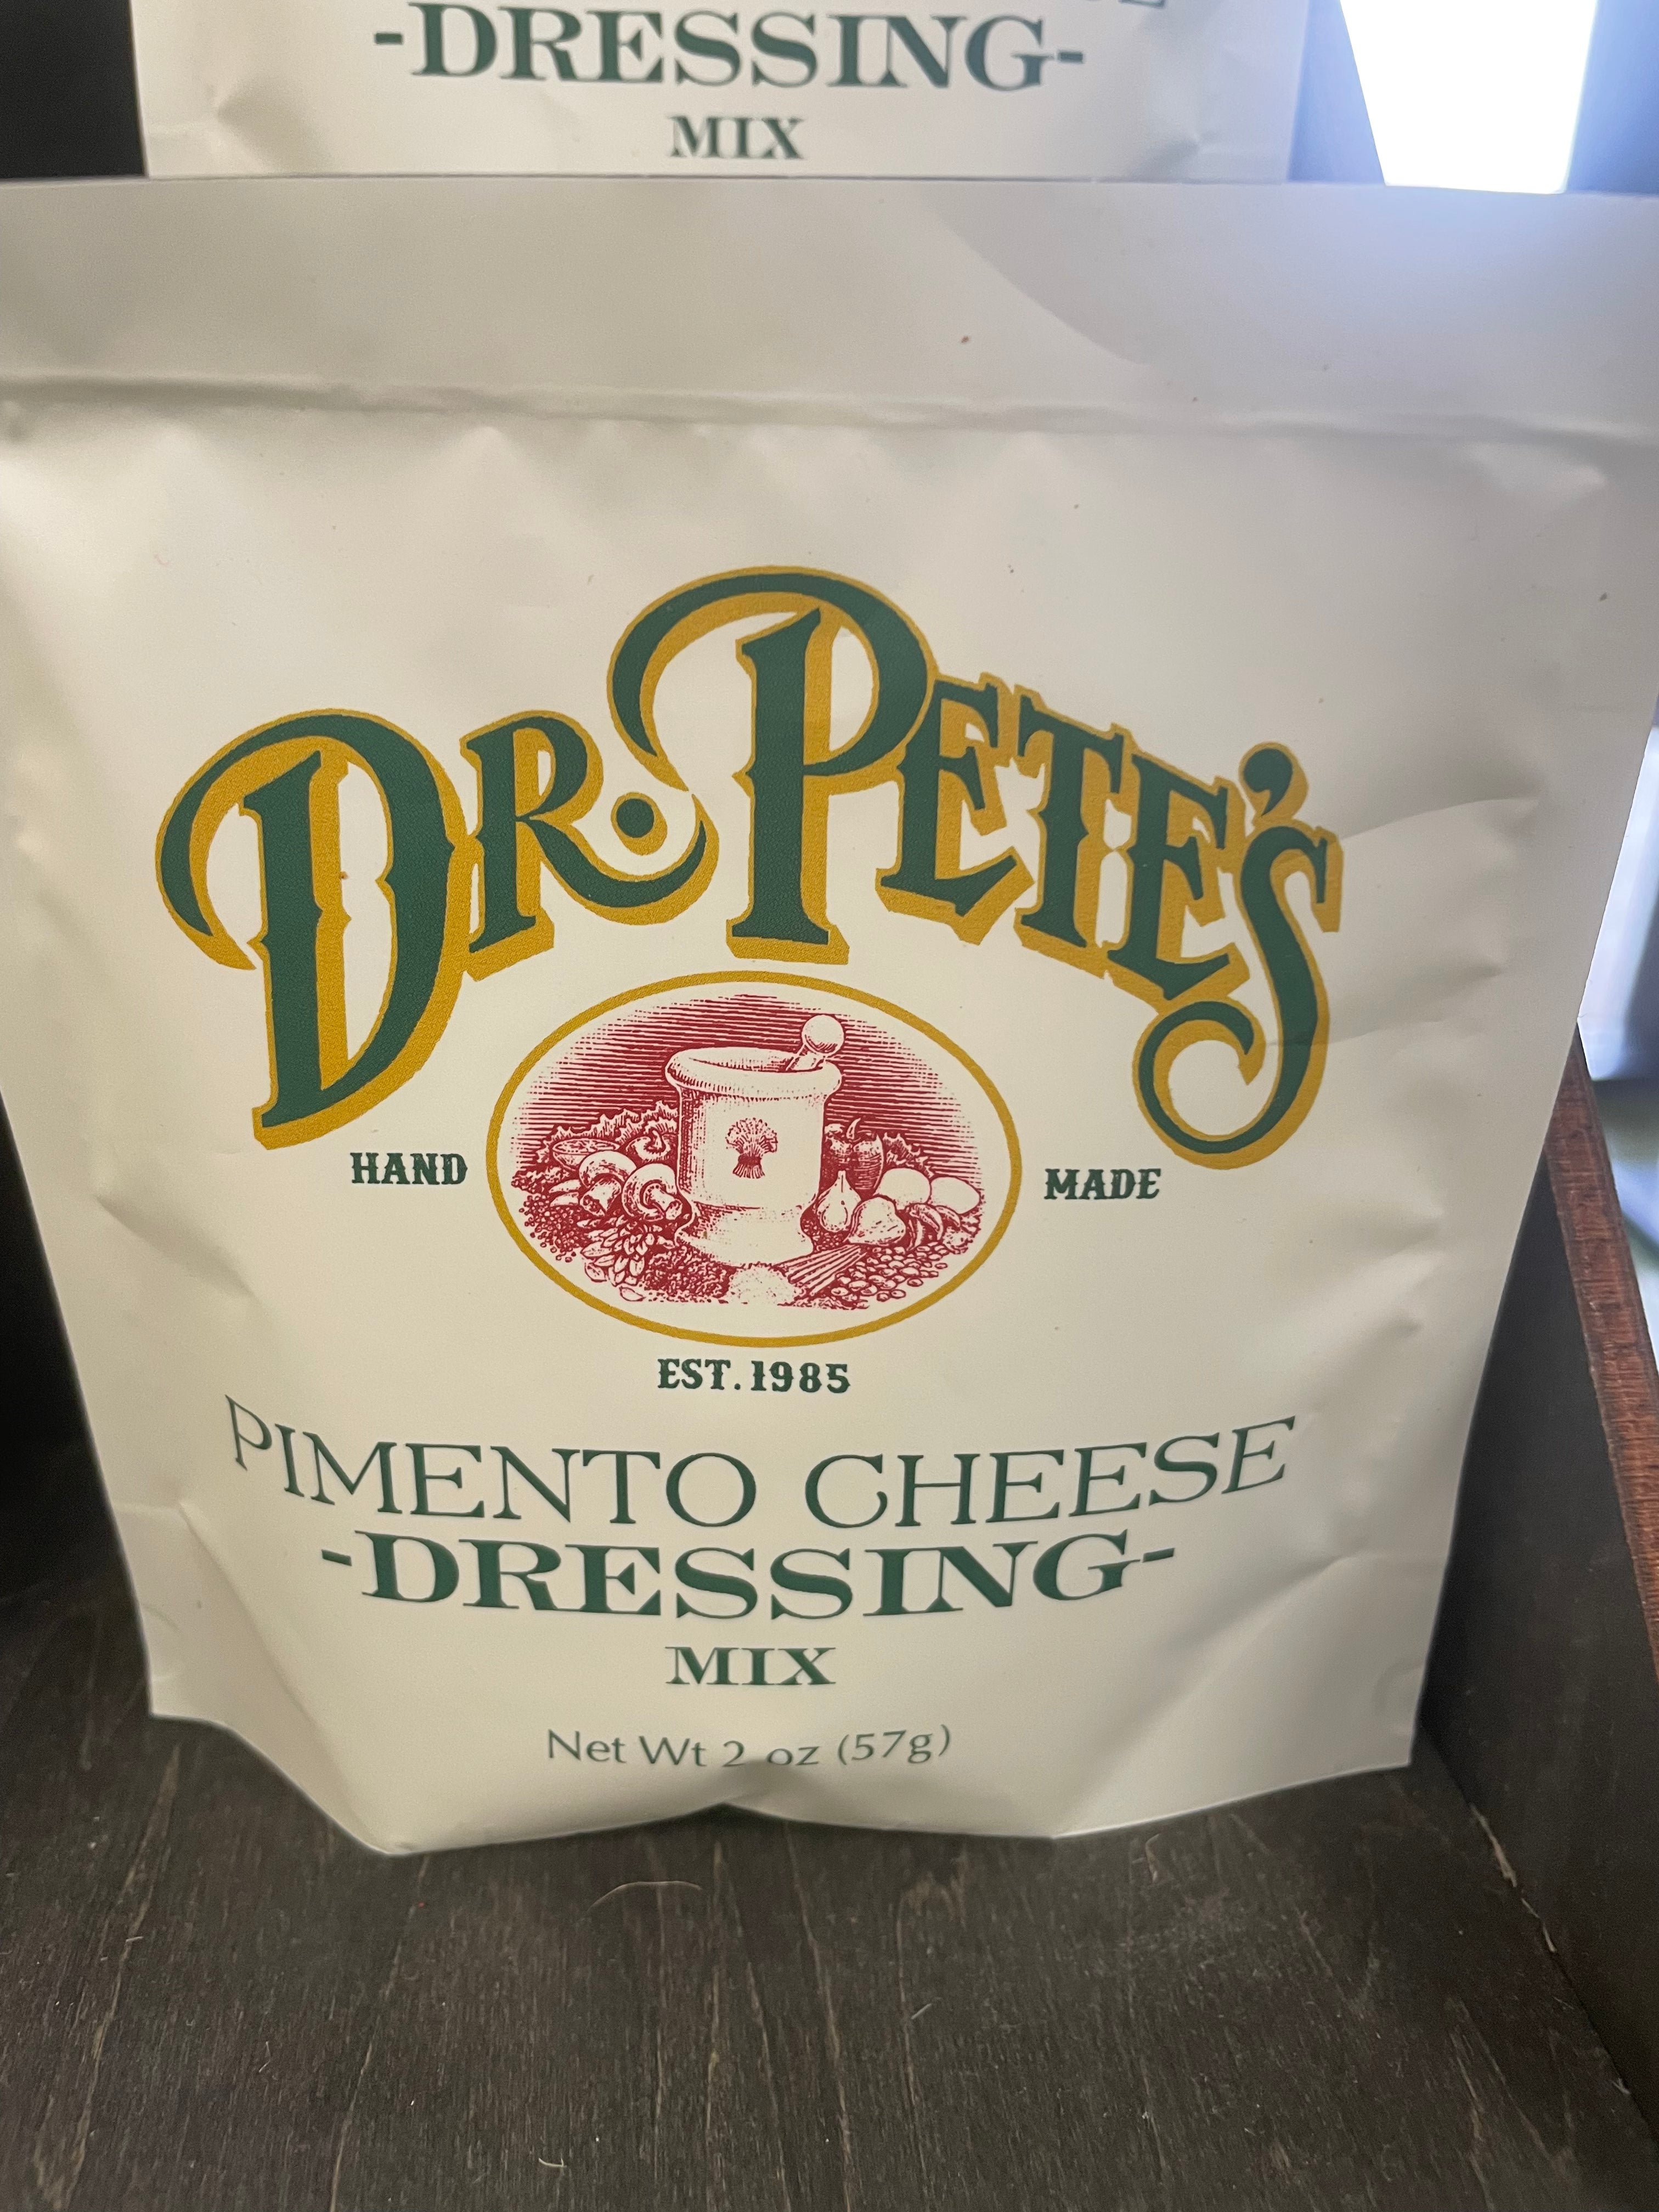 Dr. Petes Dressing Mixes